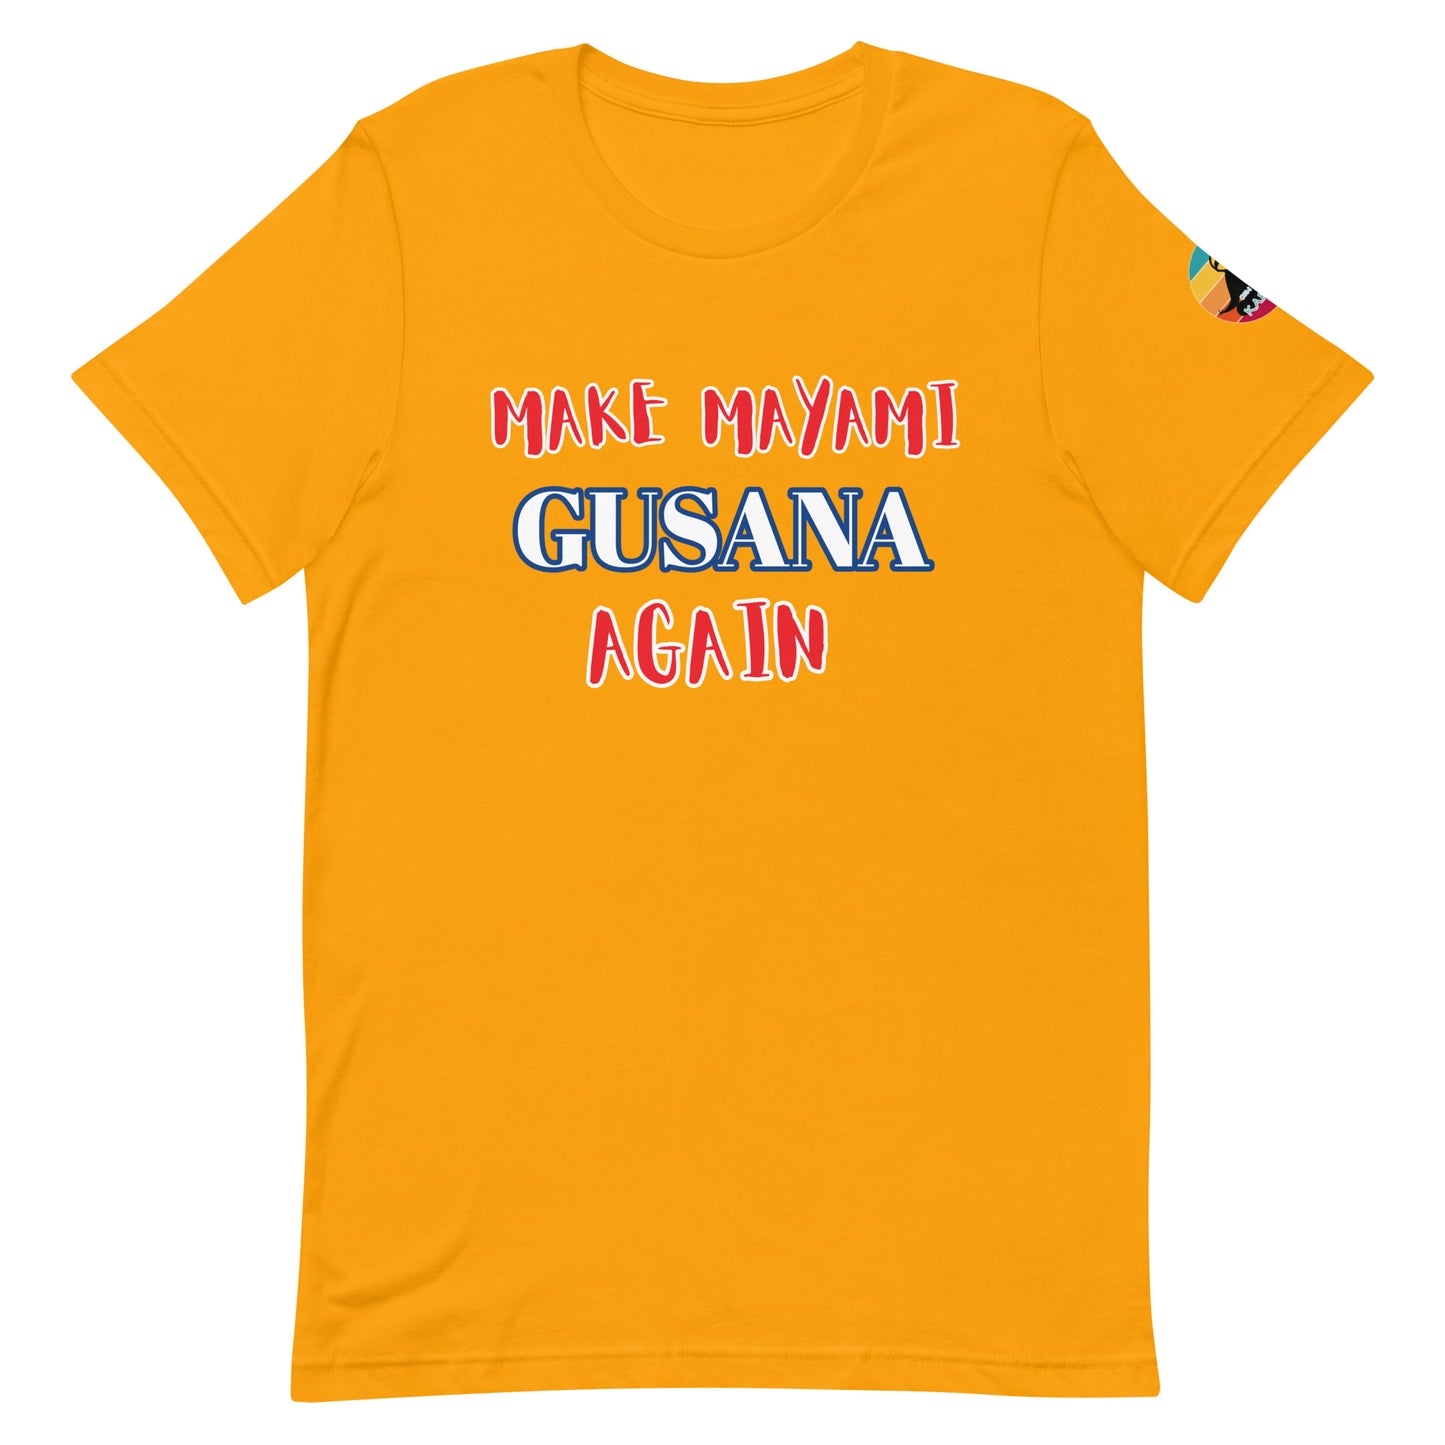 Make Mayami Gusana Again...Unisex t-shirt